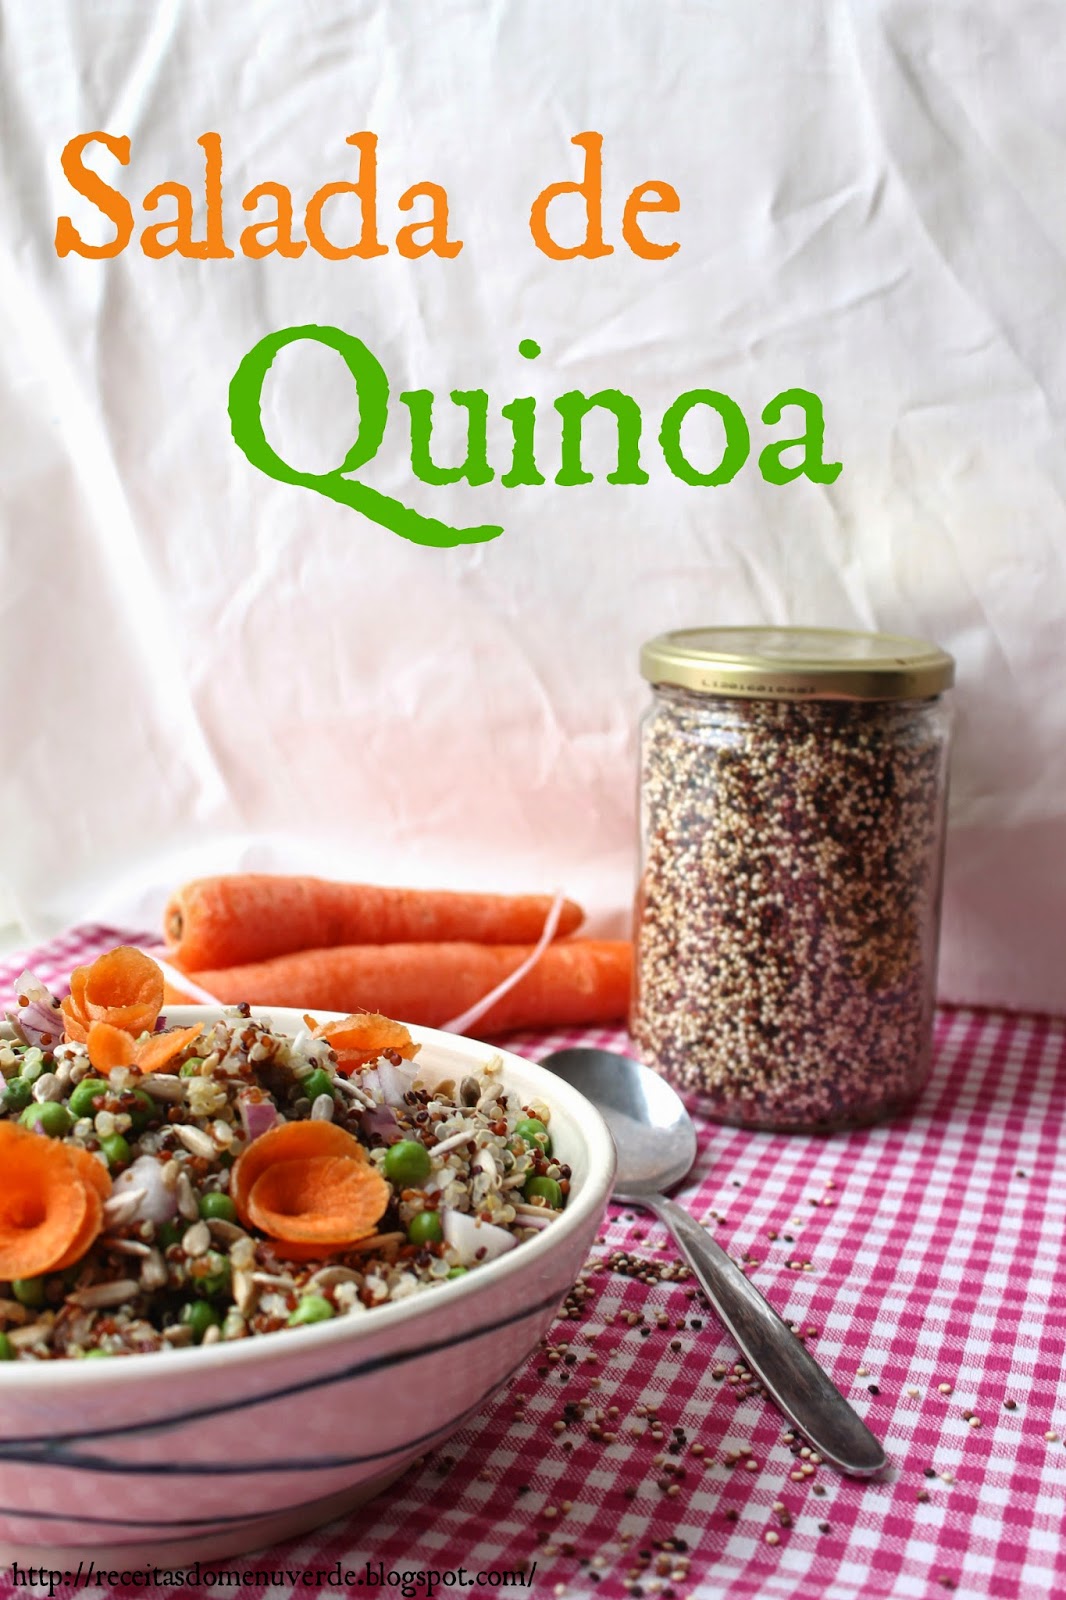 Salada de quinoa - Quinoa Salad